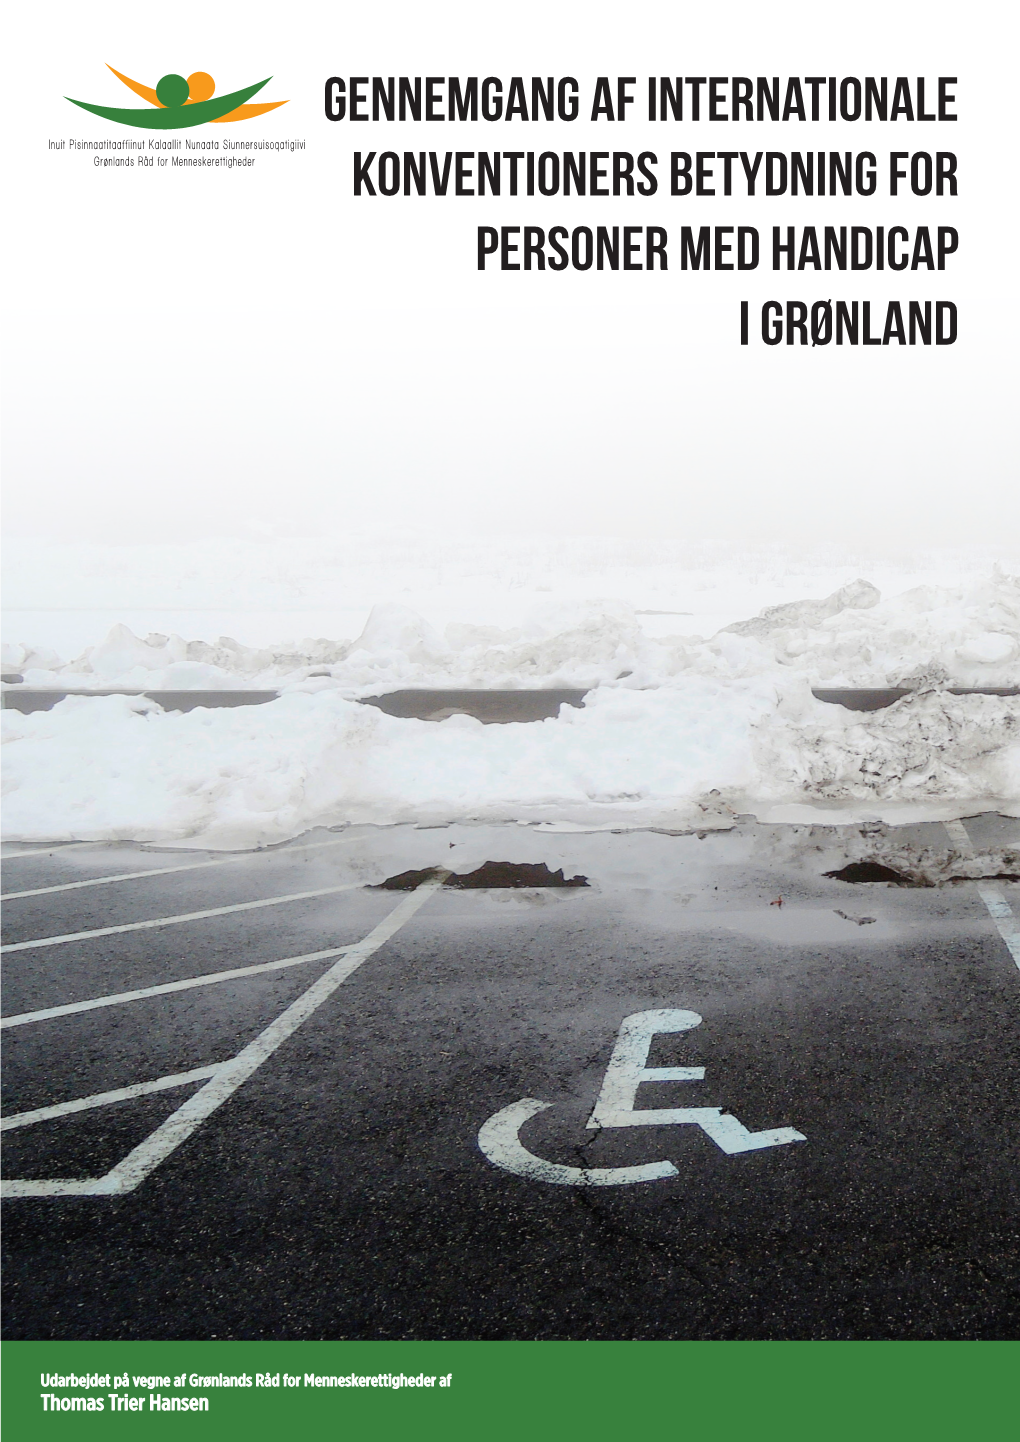 Gennemgang Af Internationale Konventioners Betydning for Personer Med Handicap I Grønland